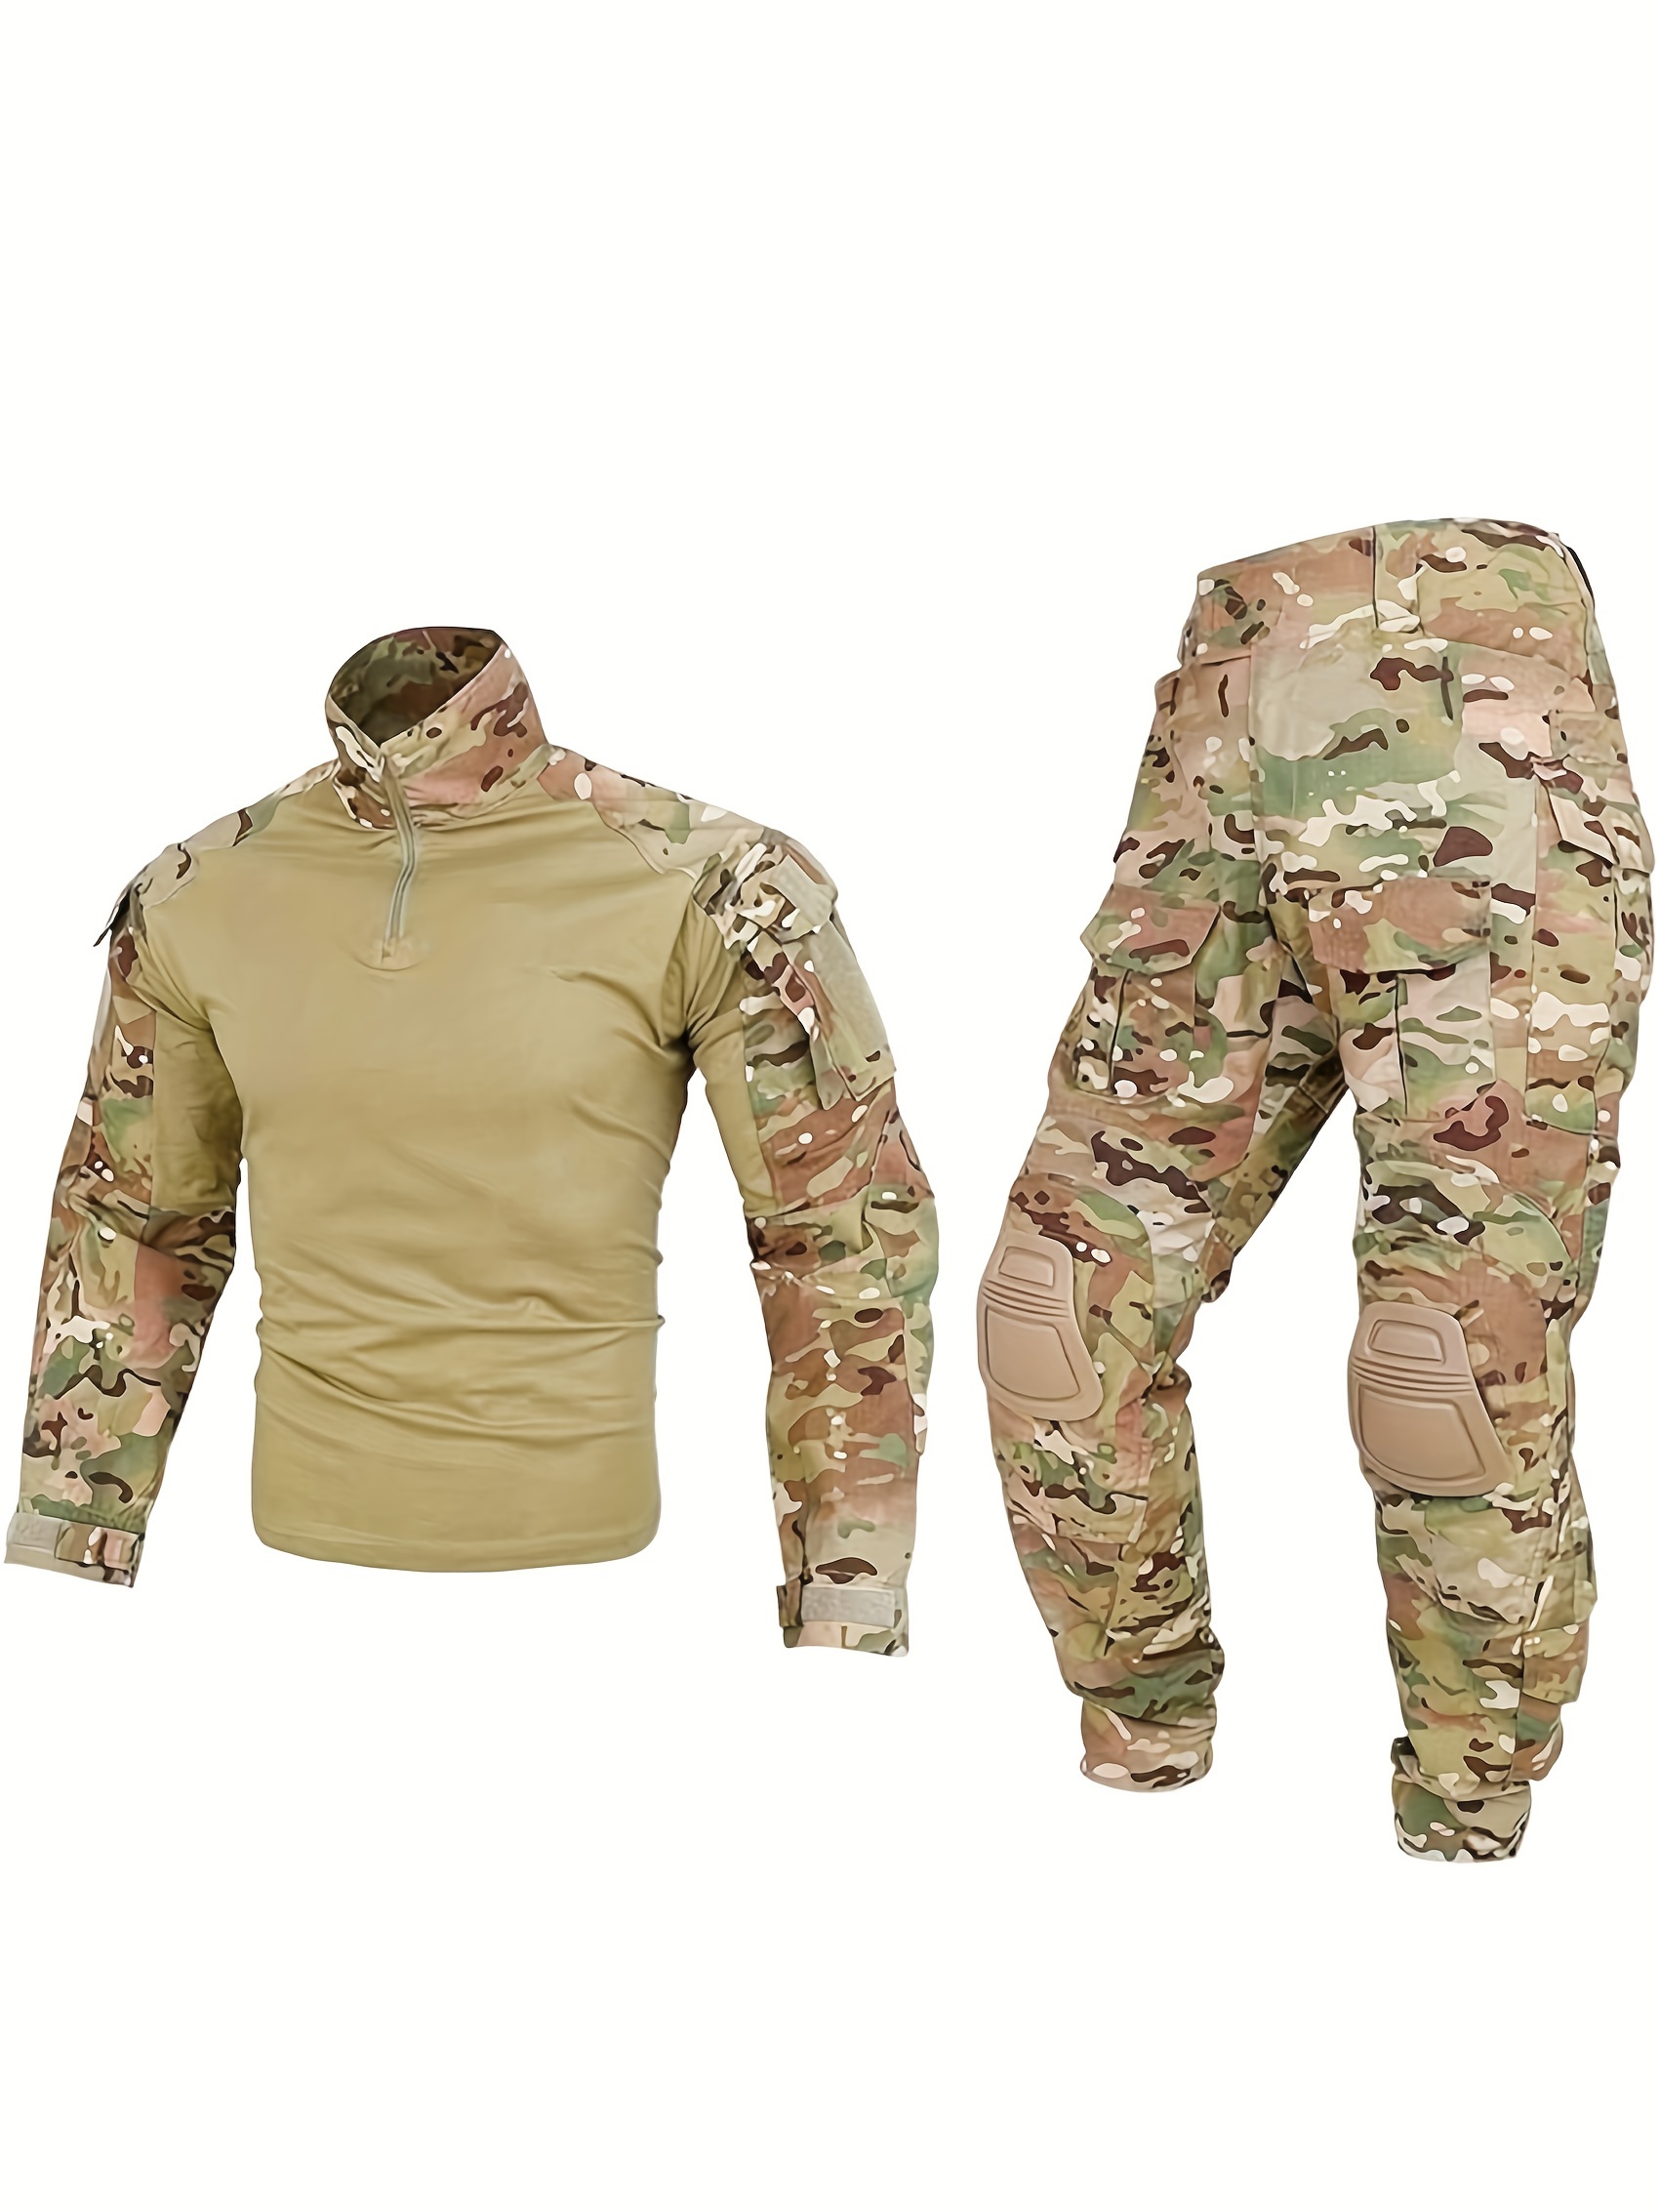 Traje militar Multicam para hombre, uniforme táctico, camisa de combate,  pantalones Softair militares, resistentes al desgaste, para acampar